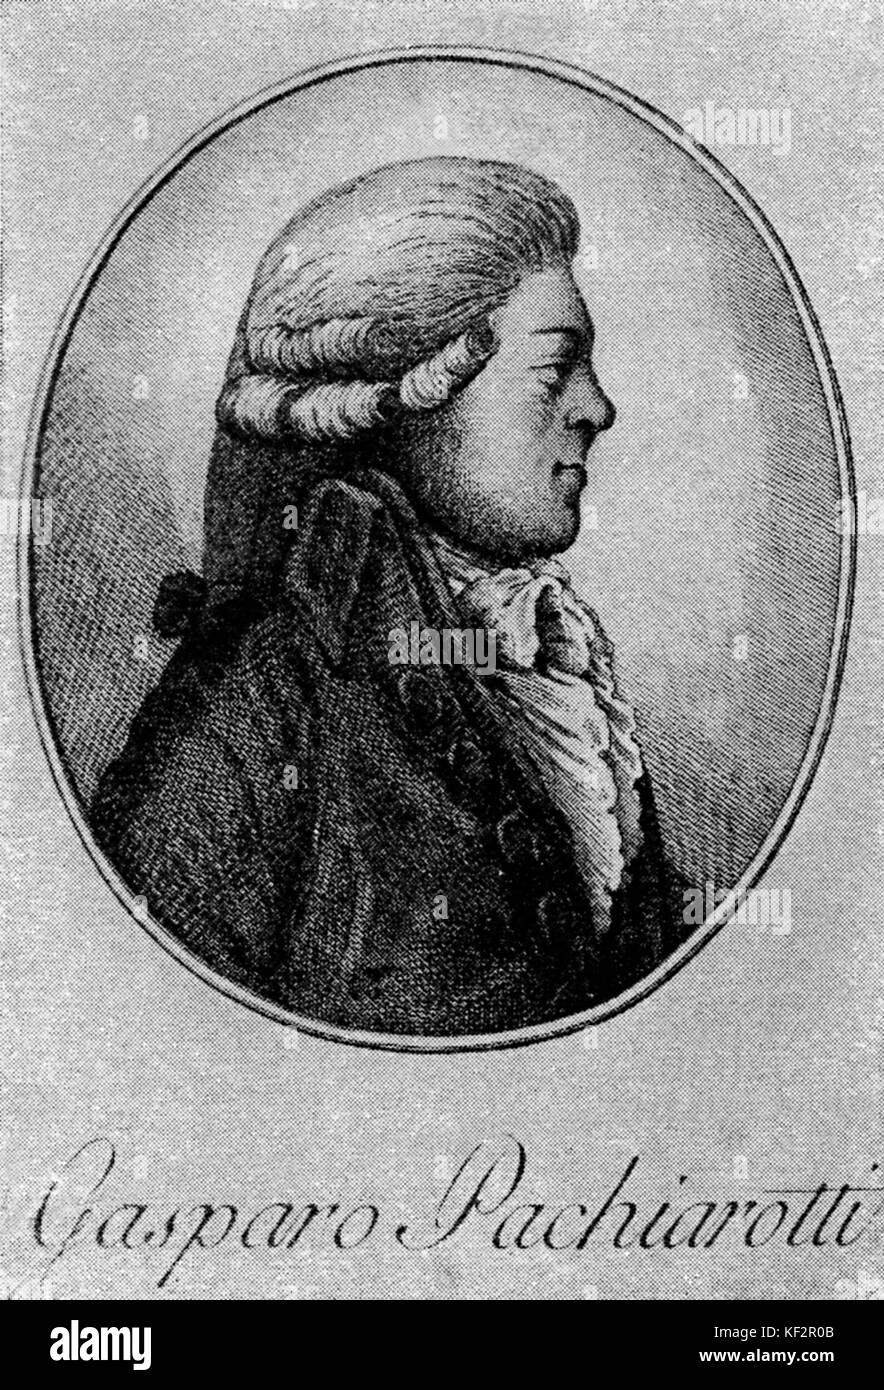 Gasparo Pachiarotti - (nato Fabriano) Italiano mezzo-soprano castrato, 21 maggio 1740 - 28 ottobre 1821. Dopo incisione su rame. Foto Stock